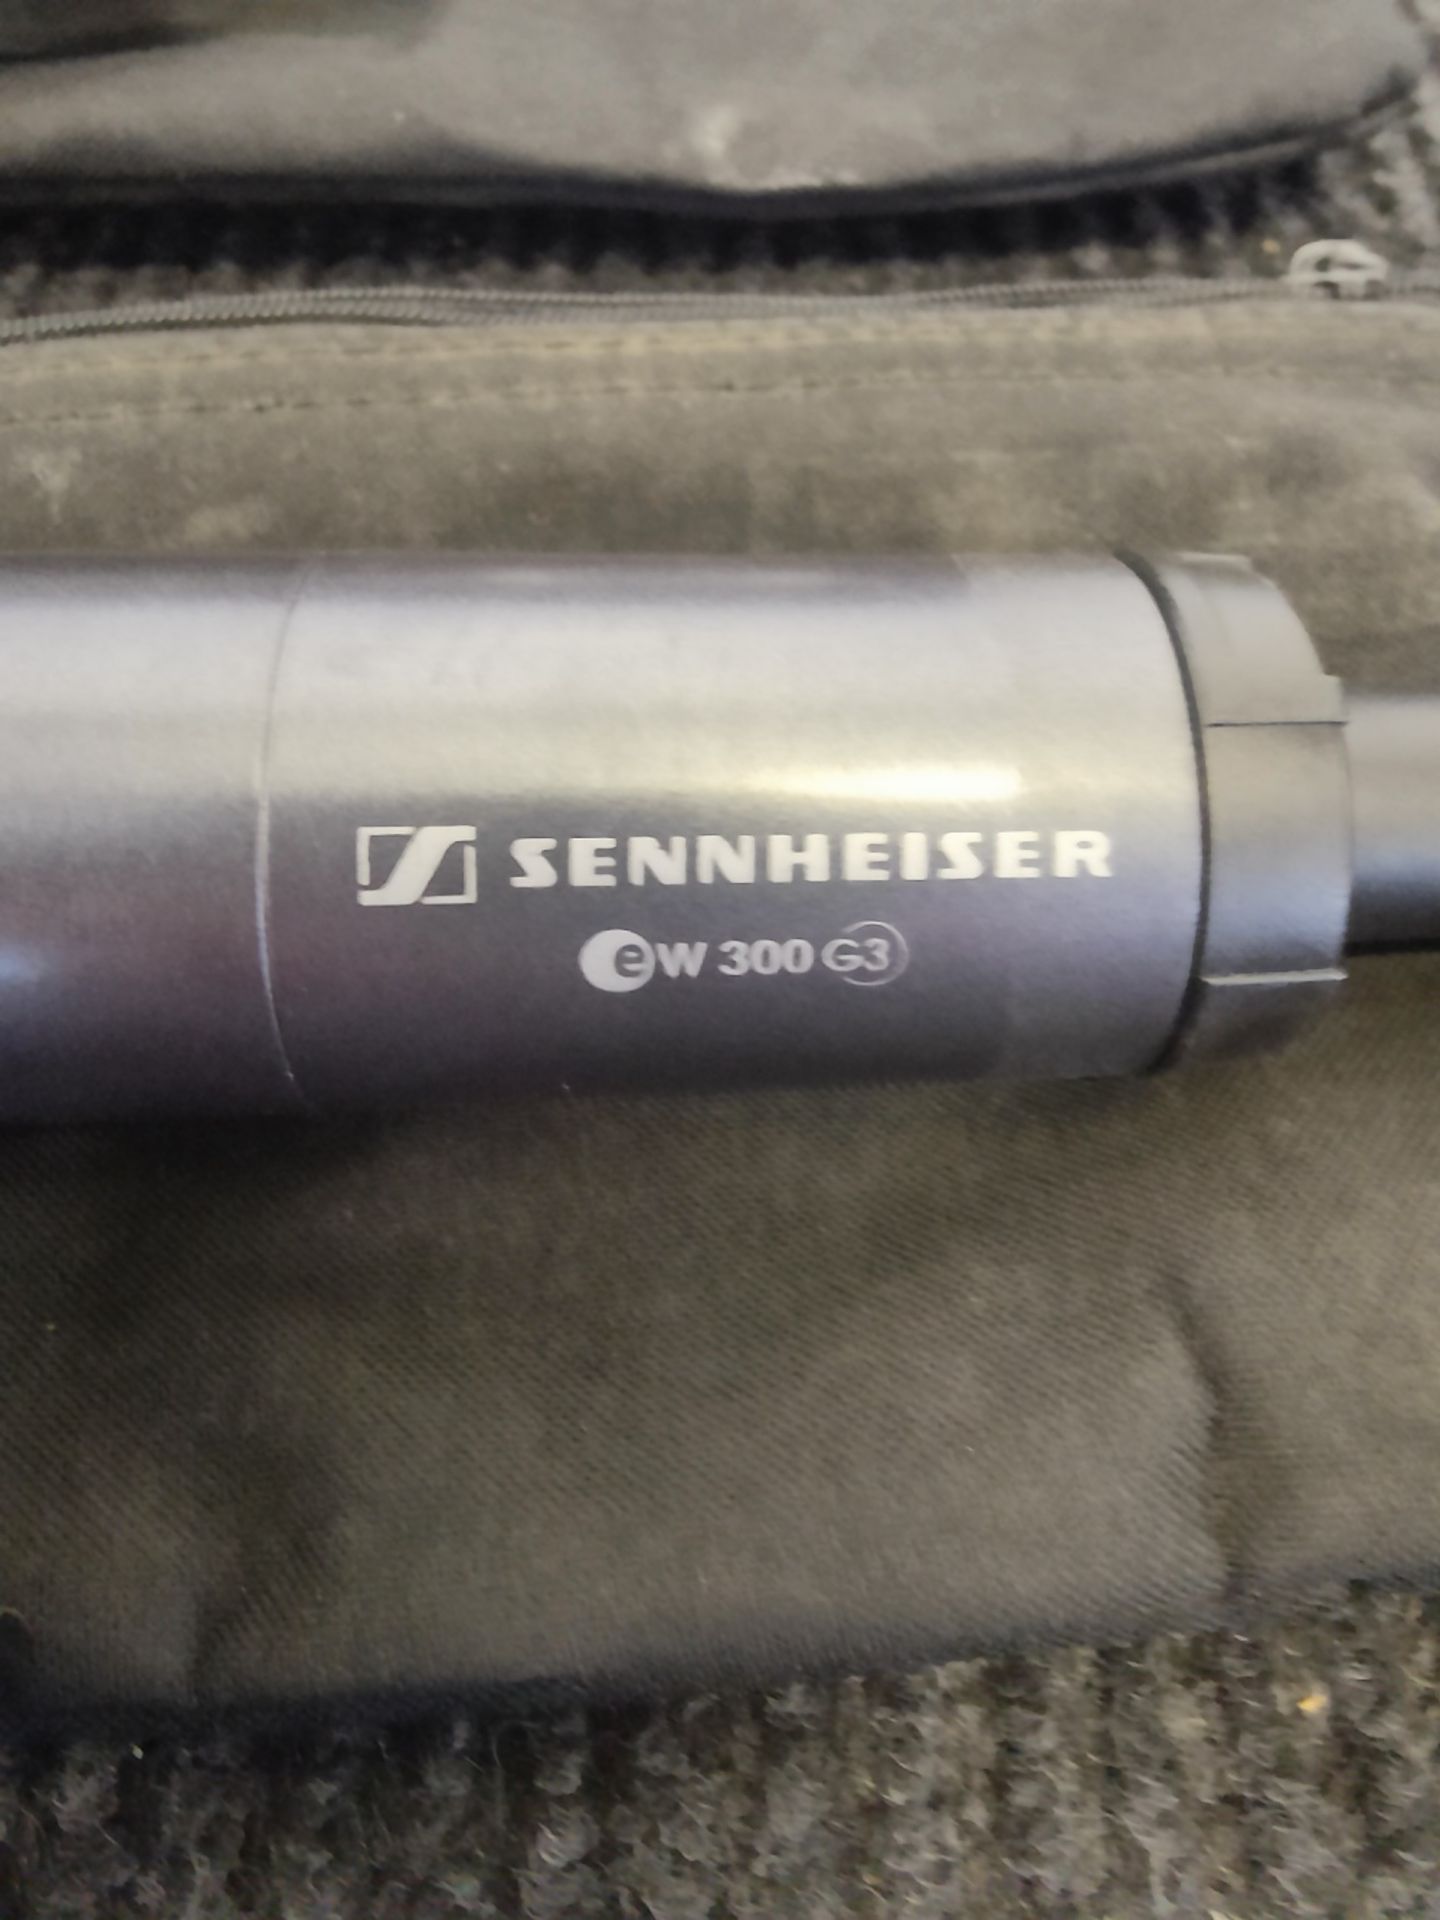 Sennheiser EW300/100 G3 2 Way Microphone Rack - Image 6 of 11